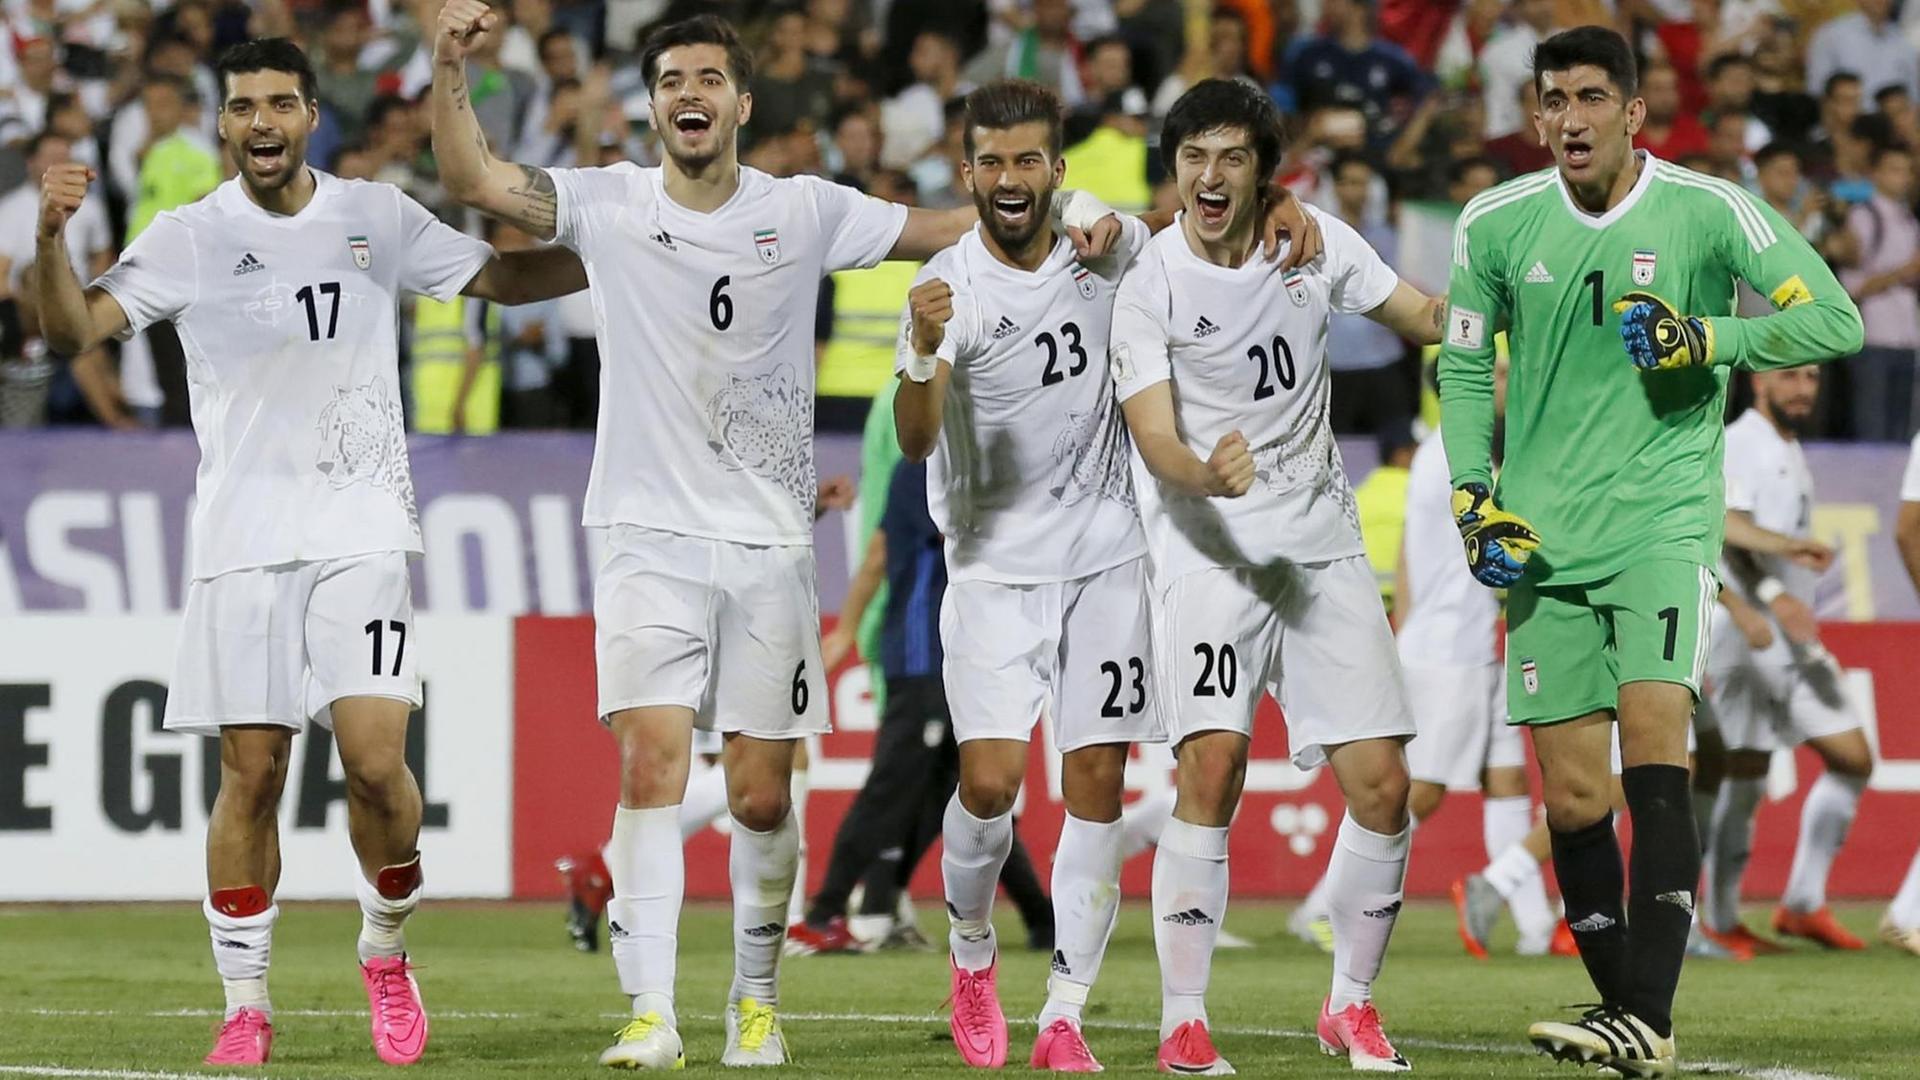 Zu sehen sind mehrere iranische Fußball-Nationalspieler auf einem Fußballfeld. Sie feiern die Qualifikation ihrer Mannschaft für die WM 2018. 